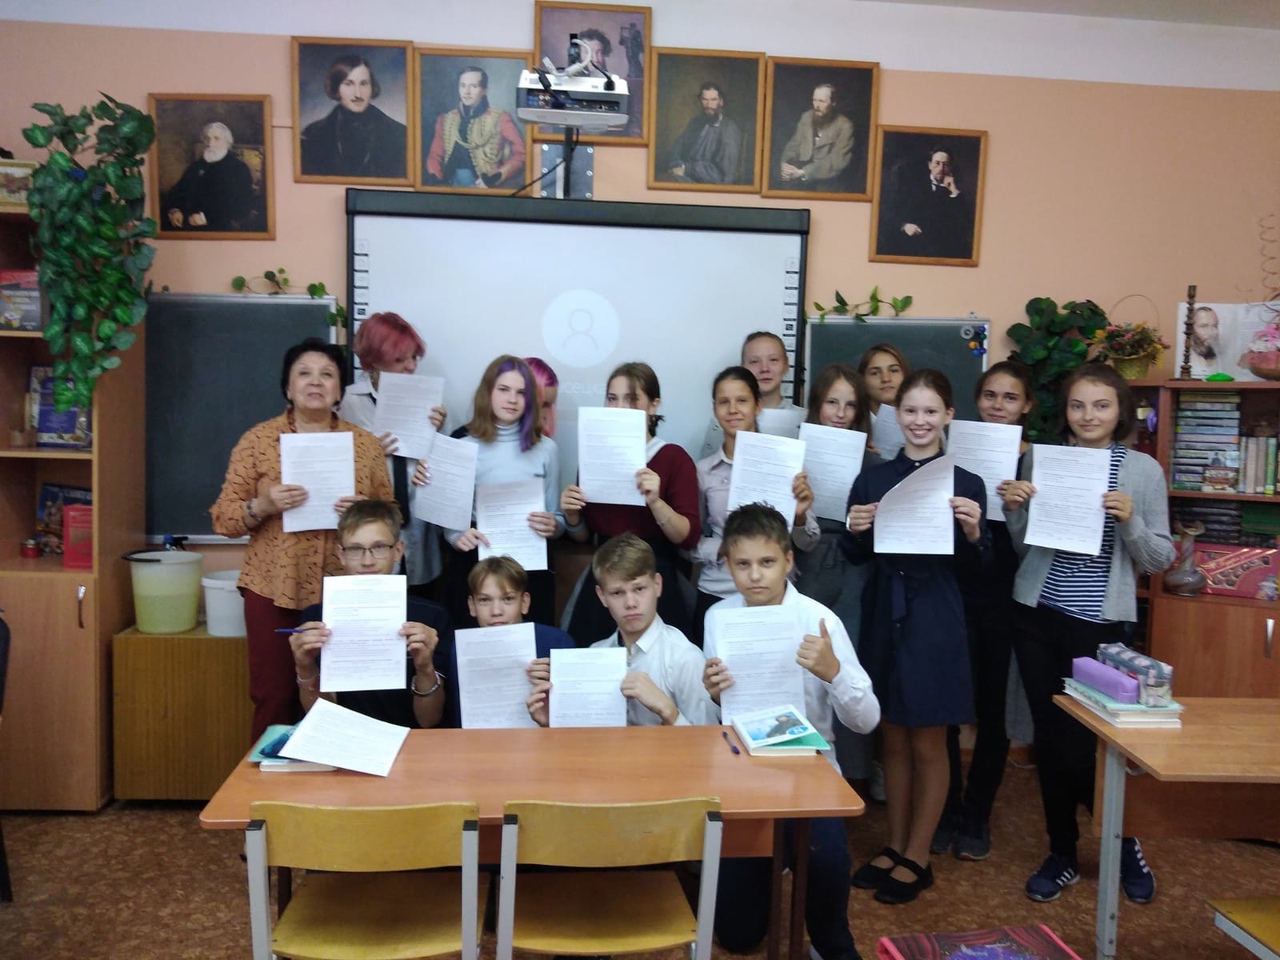 Библиотека наукограда Кольцово проверила школьников на грамотность